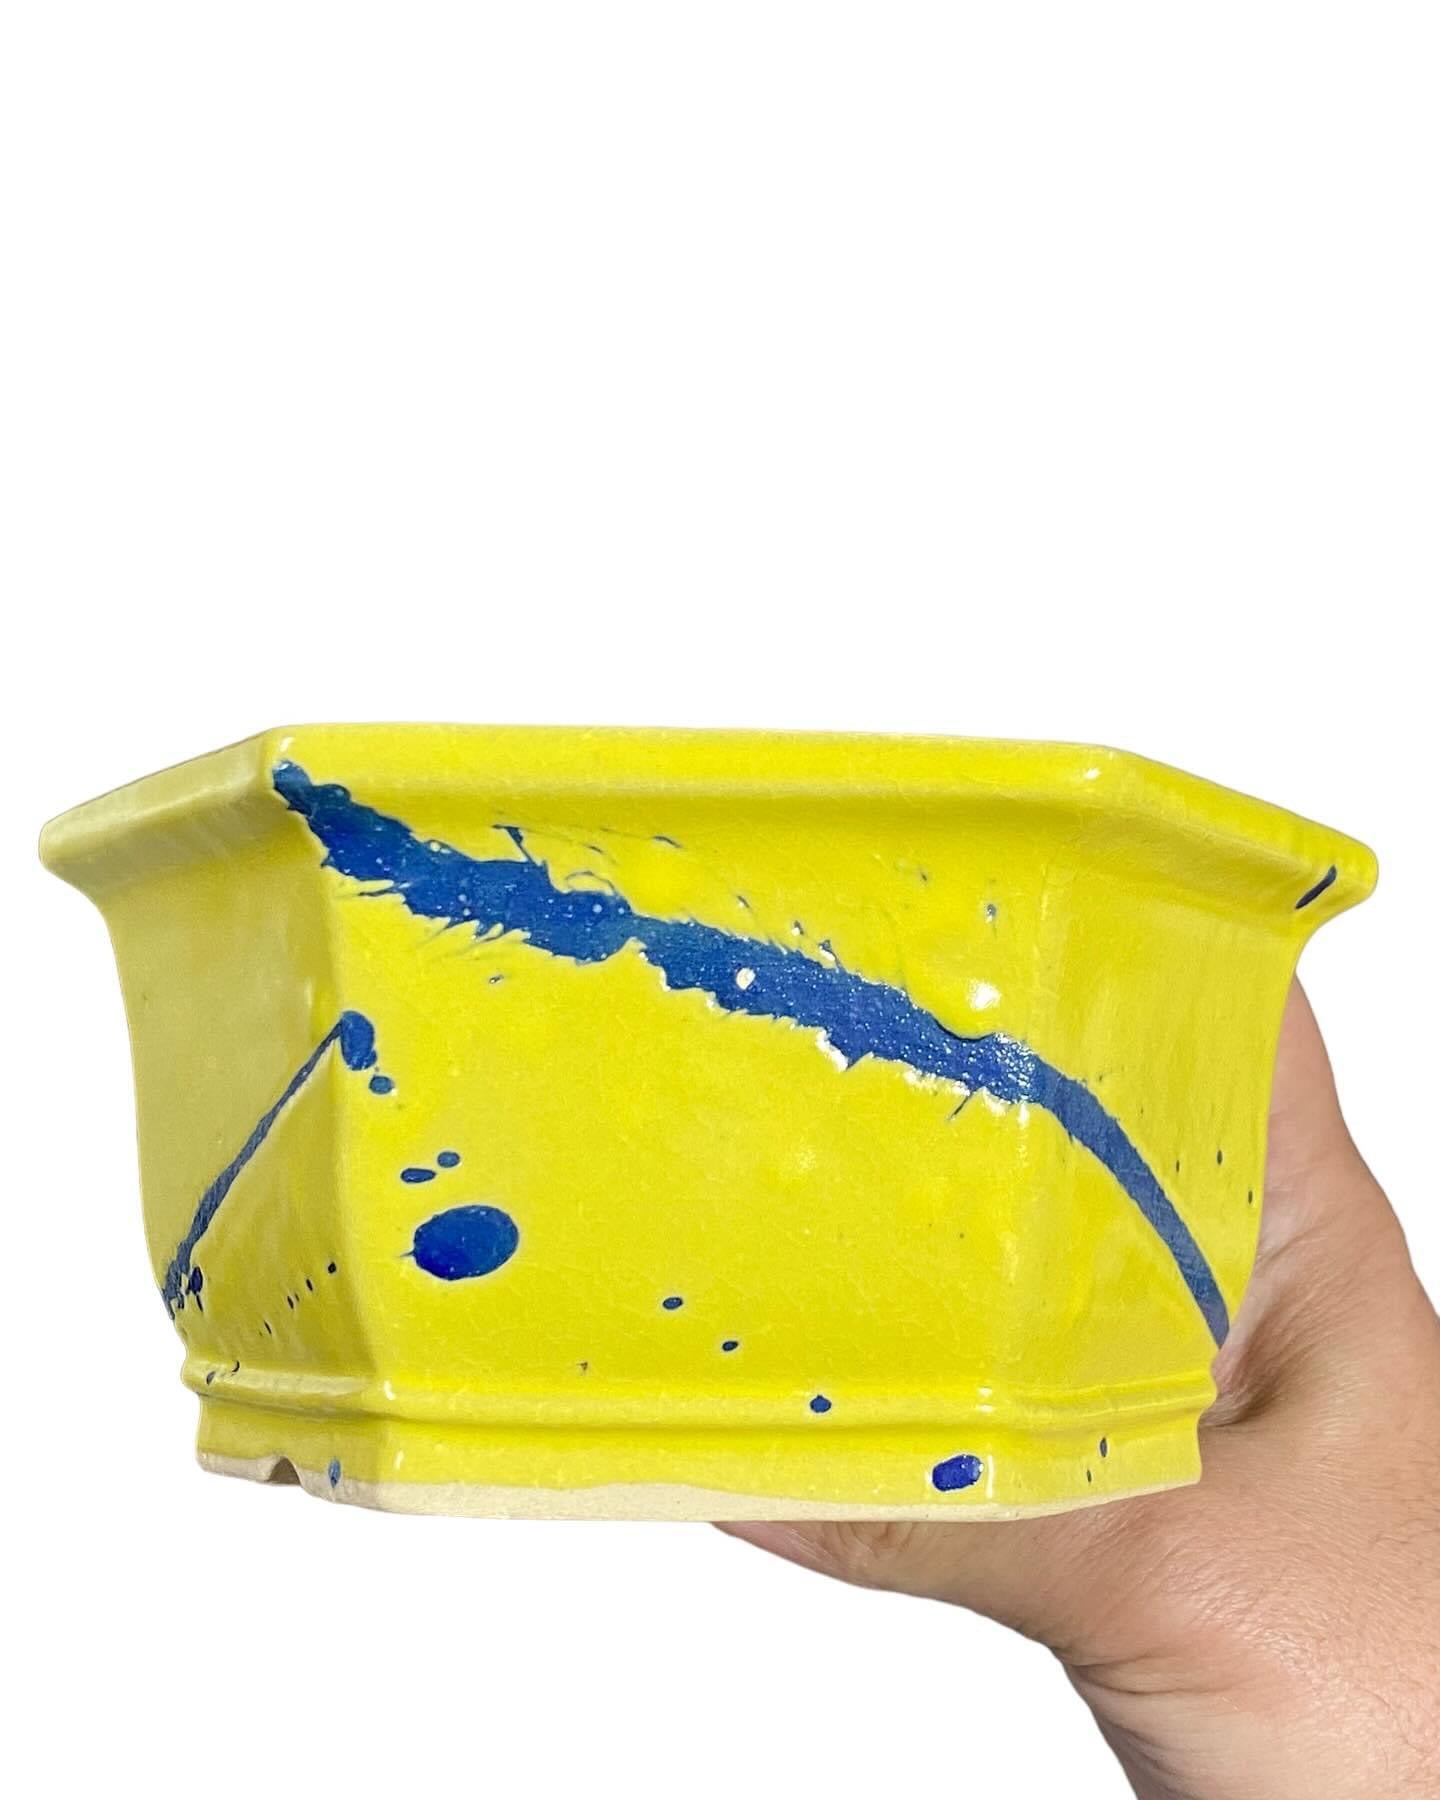 Shibakatsu - Yellow and Blue Glazed Bonsai Pot